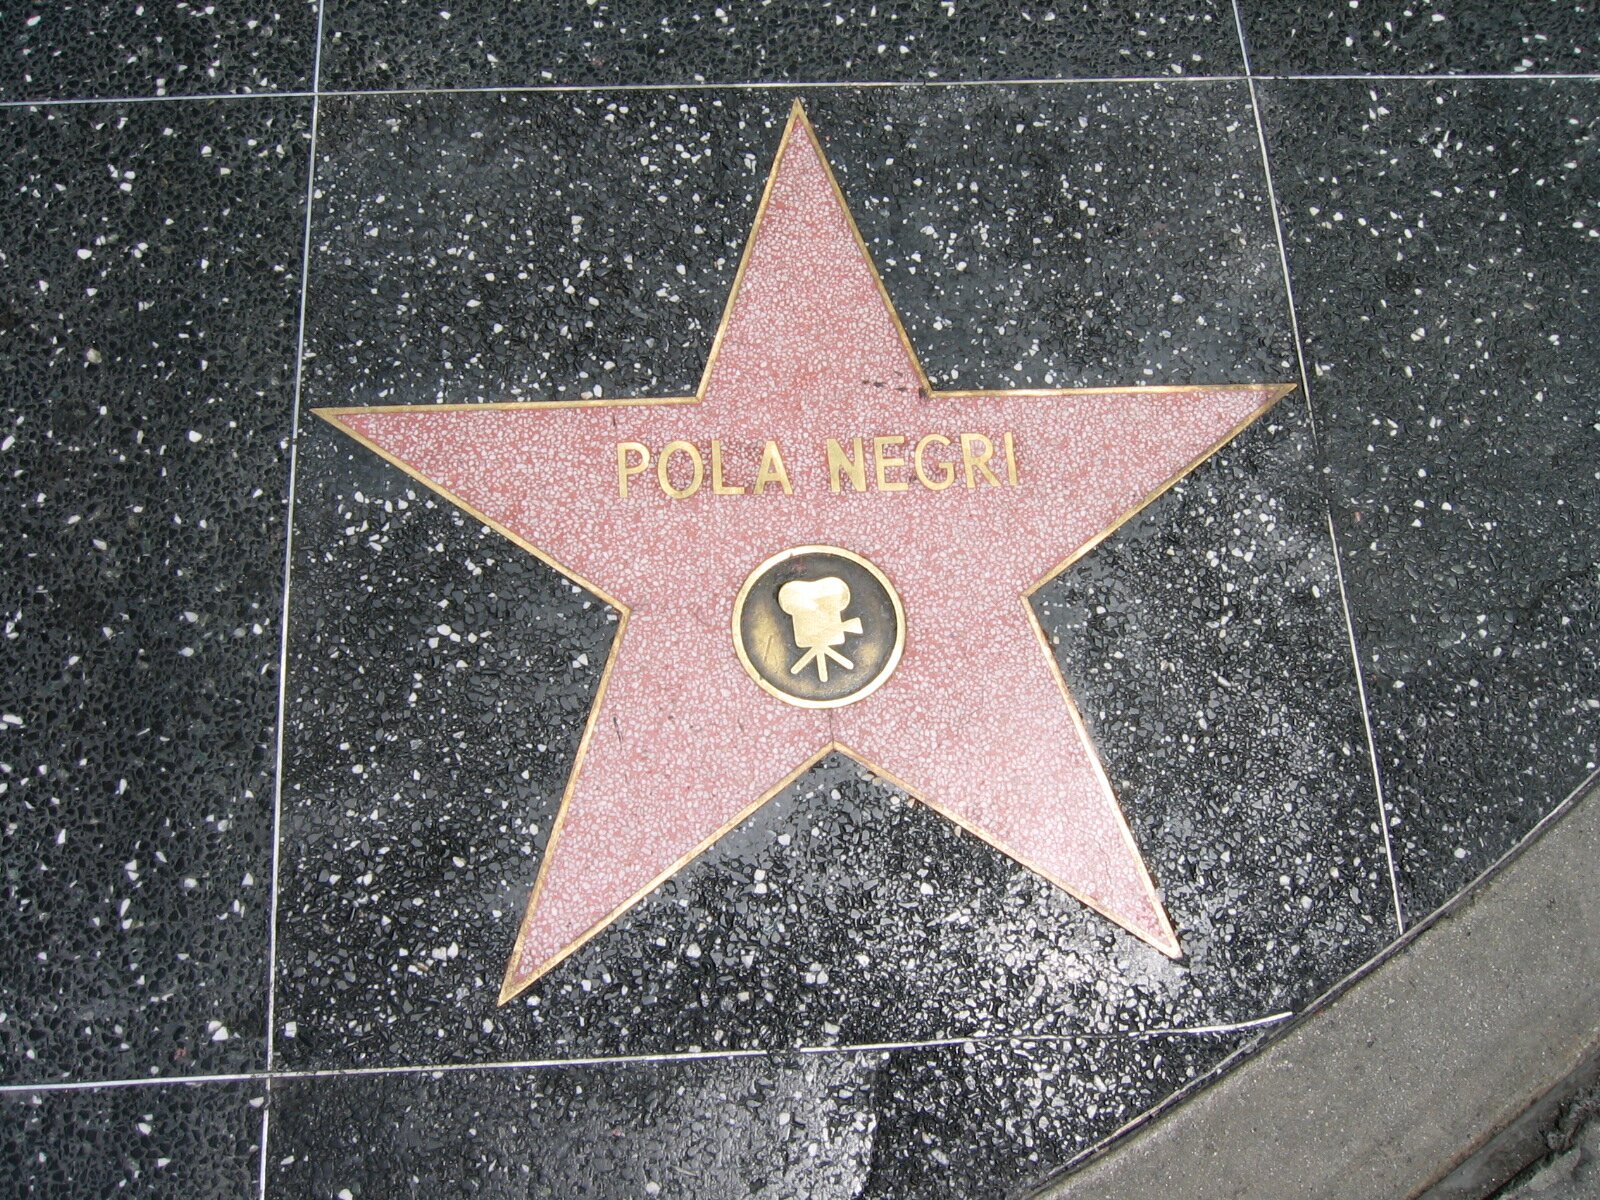 Zdjęcie przedstawia fragment chodnika, na którym jest pięcioramienna gwiazda. Na gwieździe jest napis "Pola Negri" oraz kółko na którym jest wizerunek kamery.